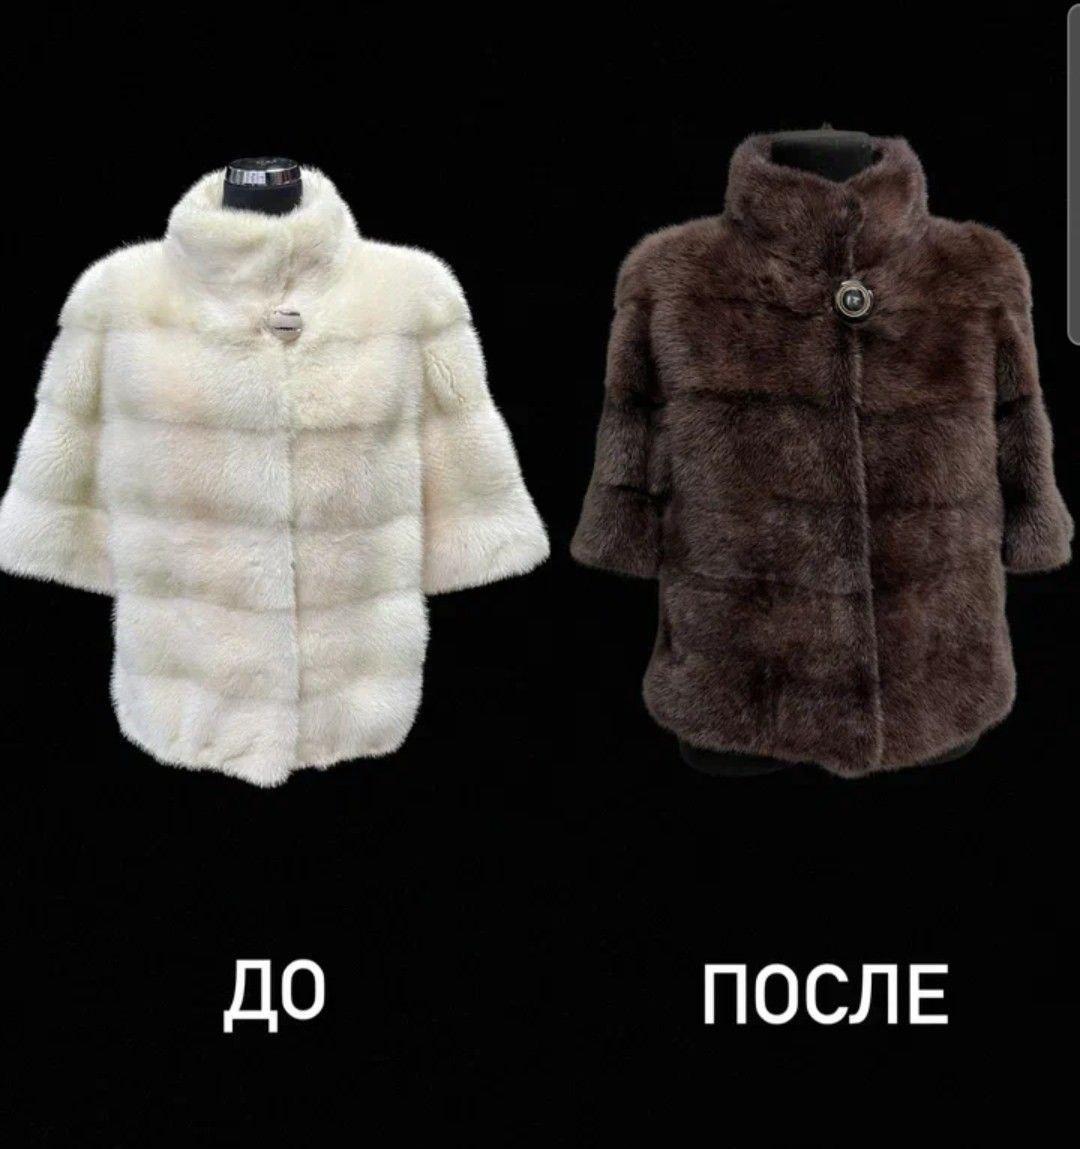 Окрашивание меховых изделий от производителя Русский мех. Москва